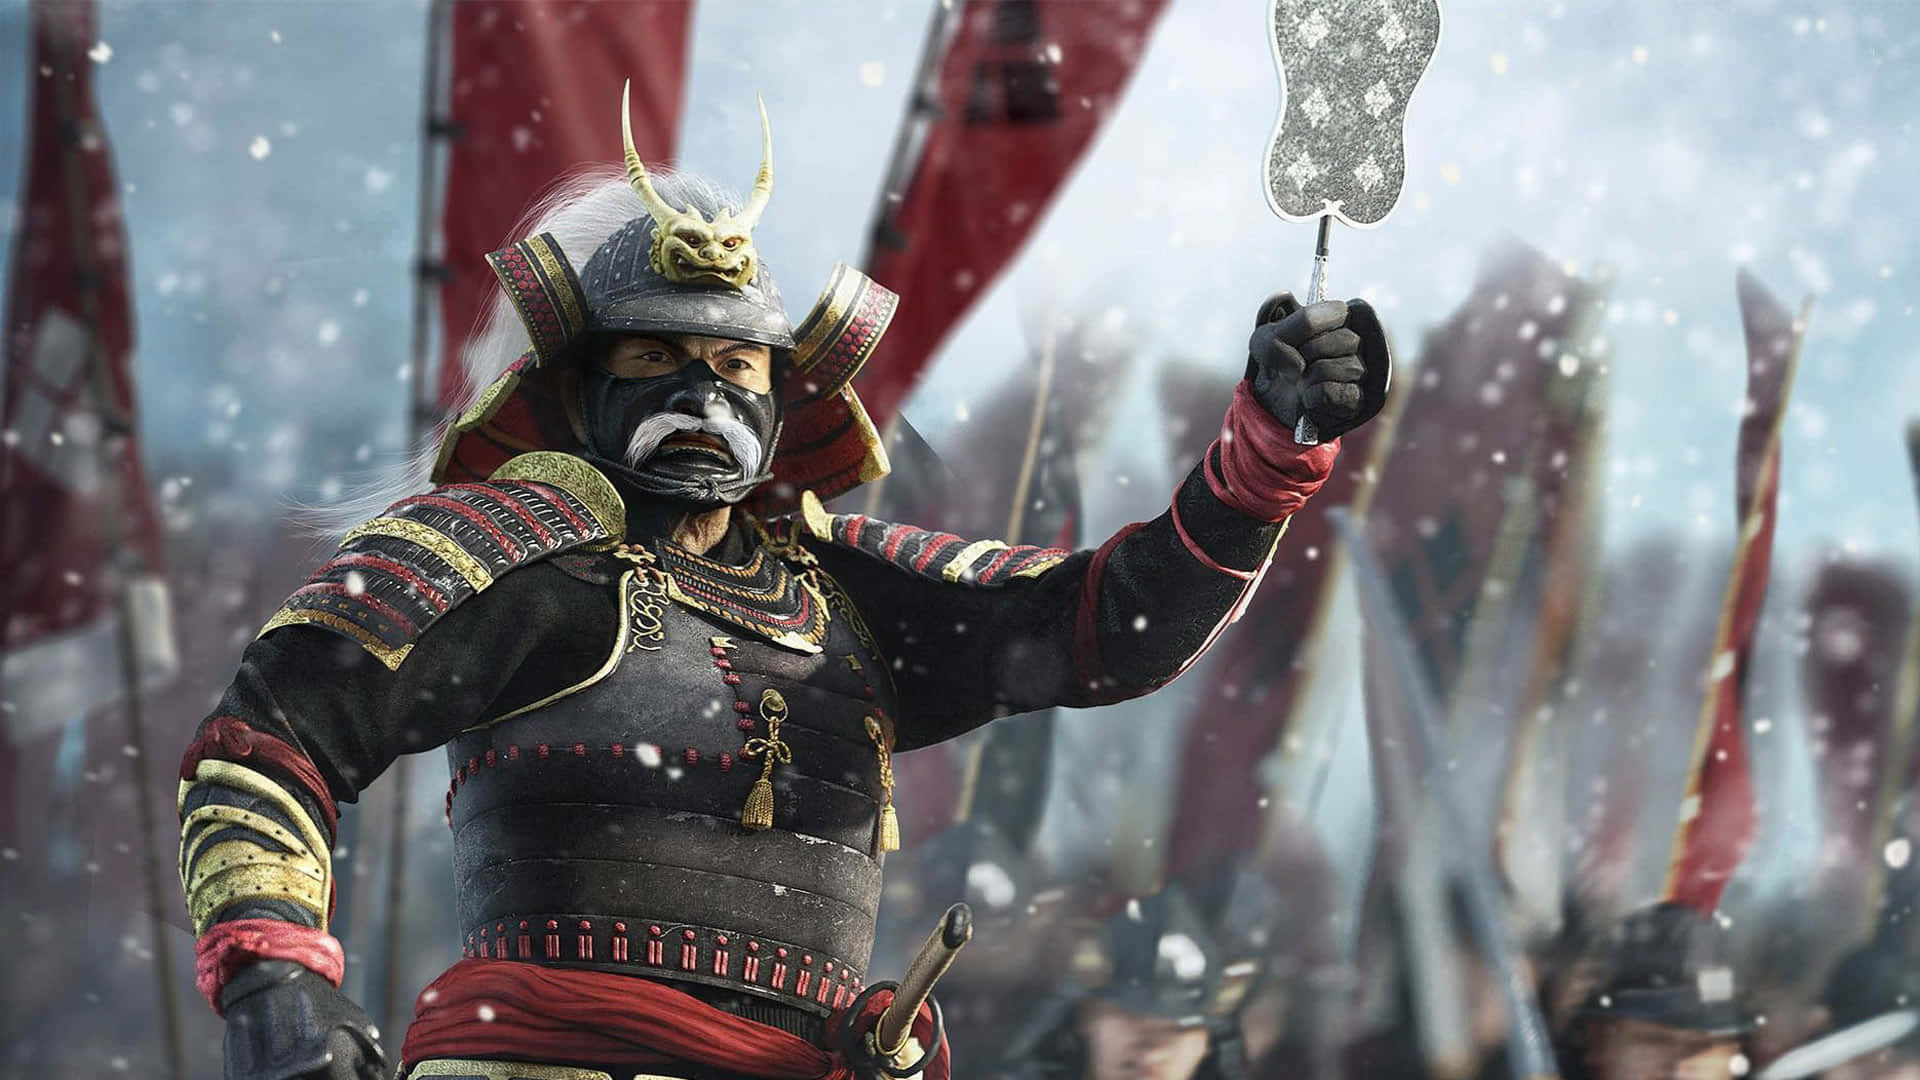 Engage in Epic Shogun Battles in Total War Shogun 2